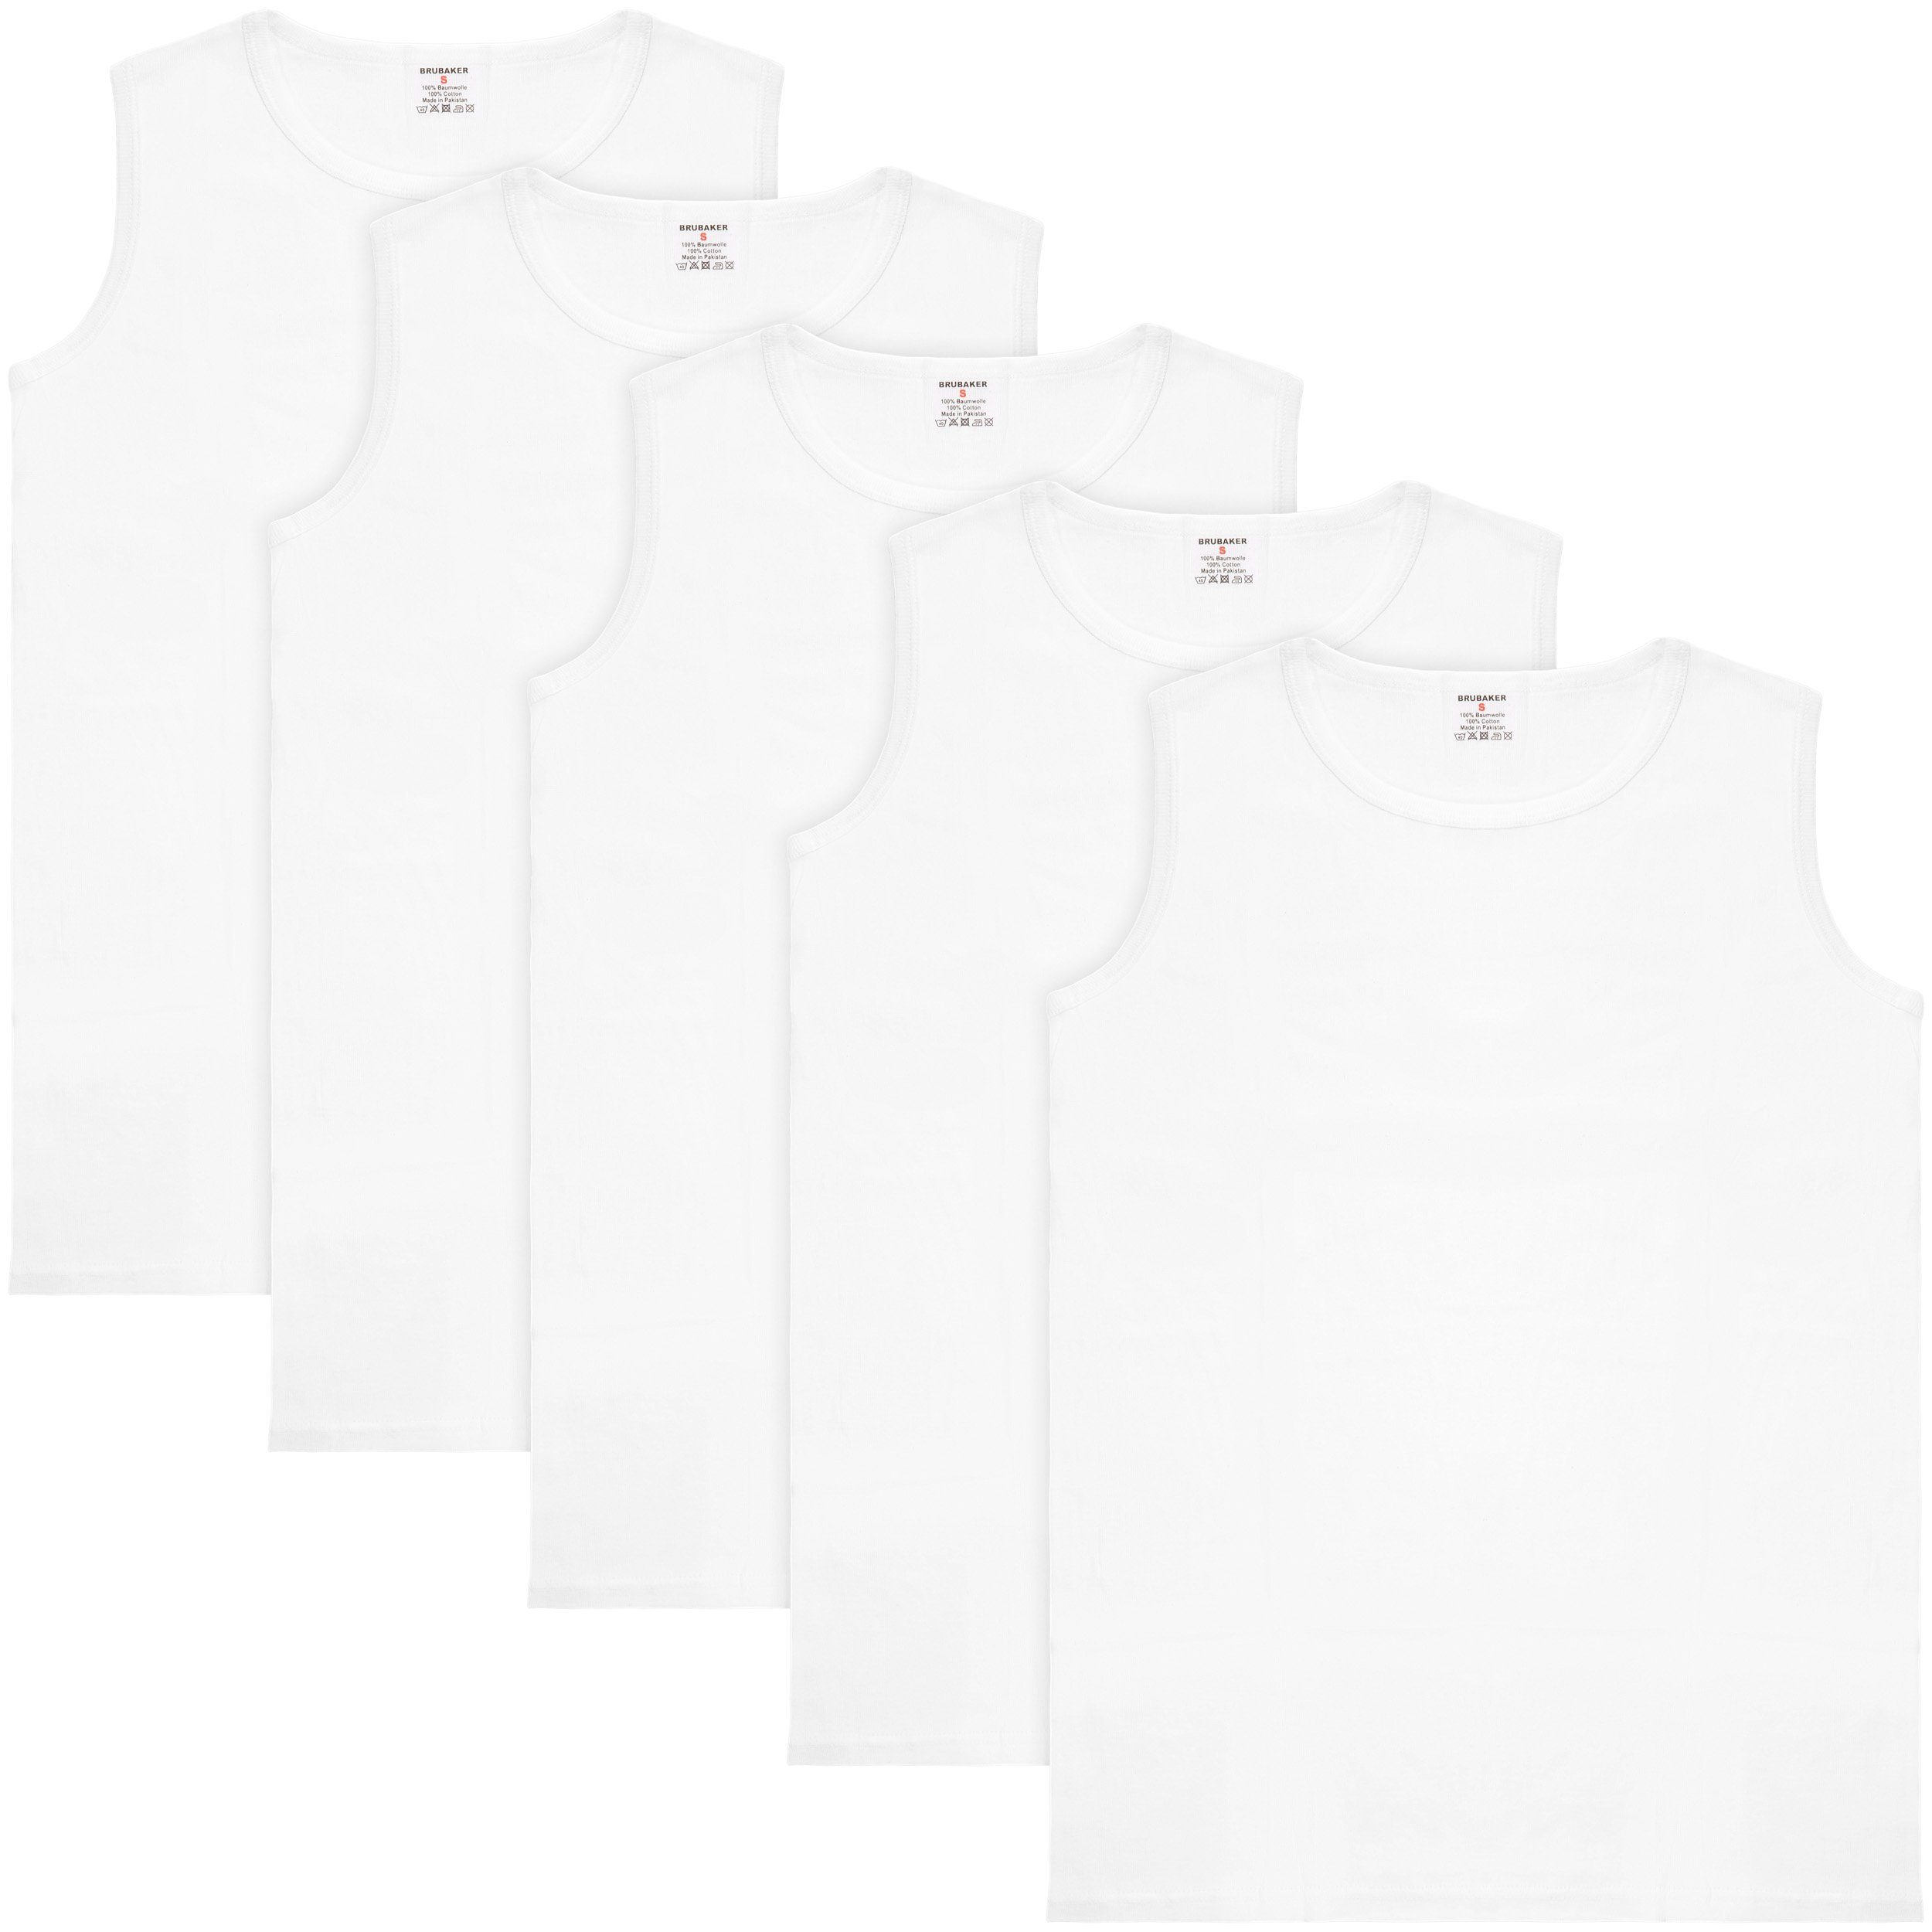 BRUBAKER Muskelshirt Tank Top Unterhemd mit Rundhals Ausschnitt (5er-Pack) Herren Tanktop aus hochwertiger Baumwolle (glatt), Extra Lang für Männer, Schlichtes Basic Achselshirt Weiß